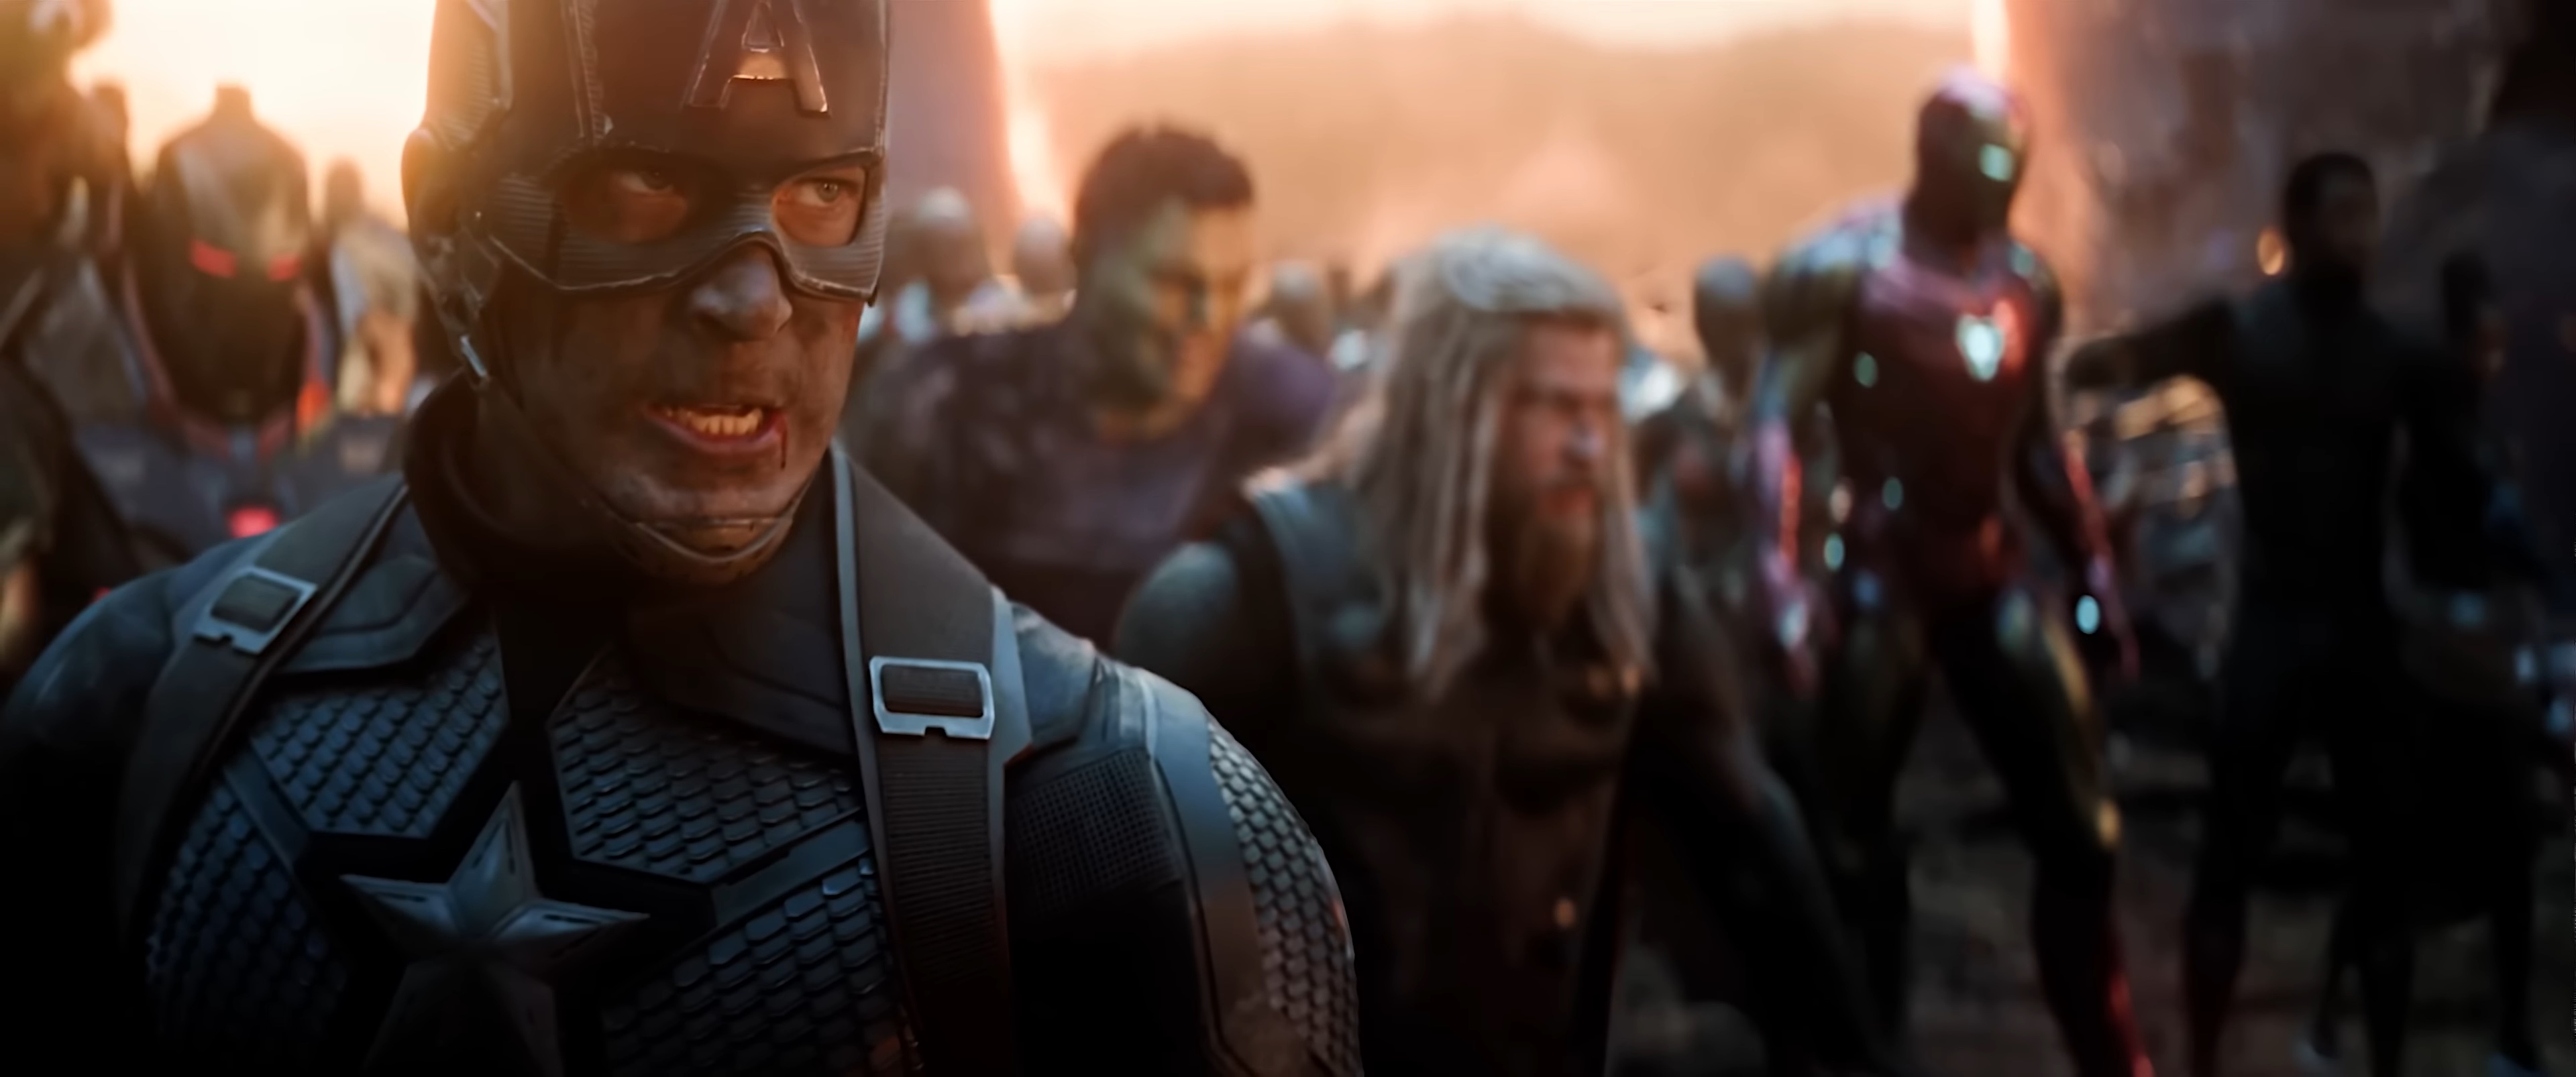 Capitão América ao lado de Hulk, Thor, Homem de Ferro, Pantera Negra e companhia.  em "Vingadores: Ultimato".